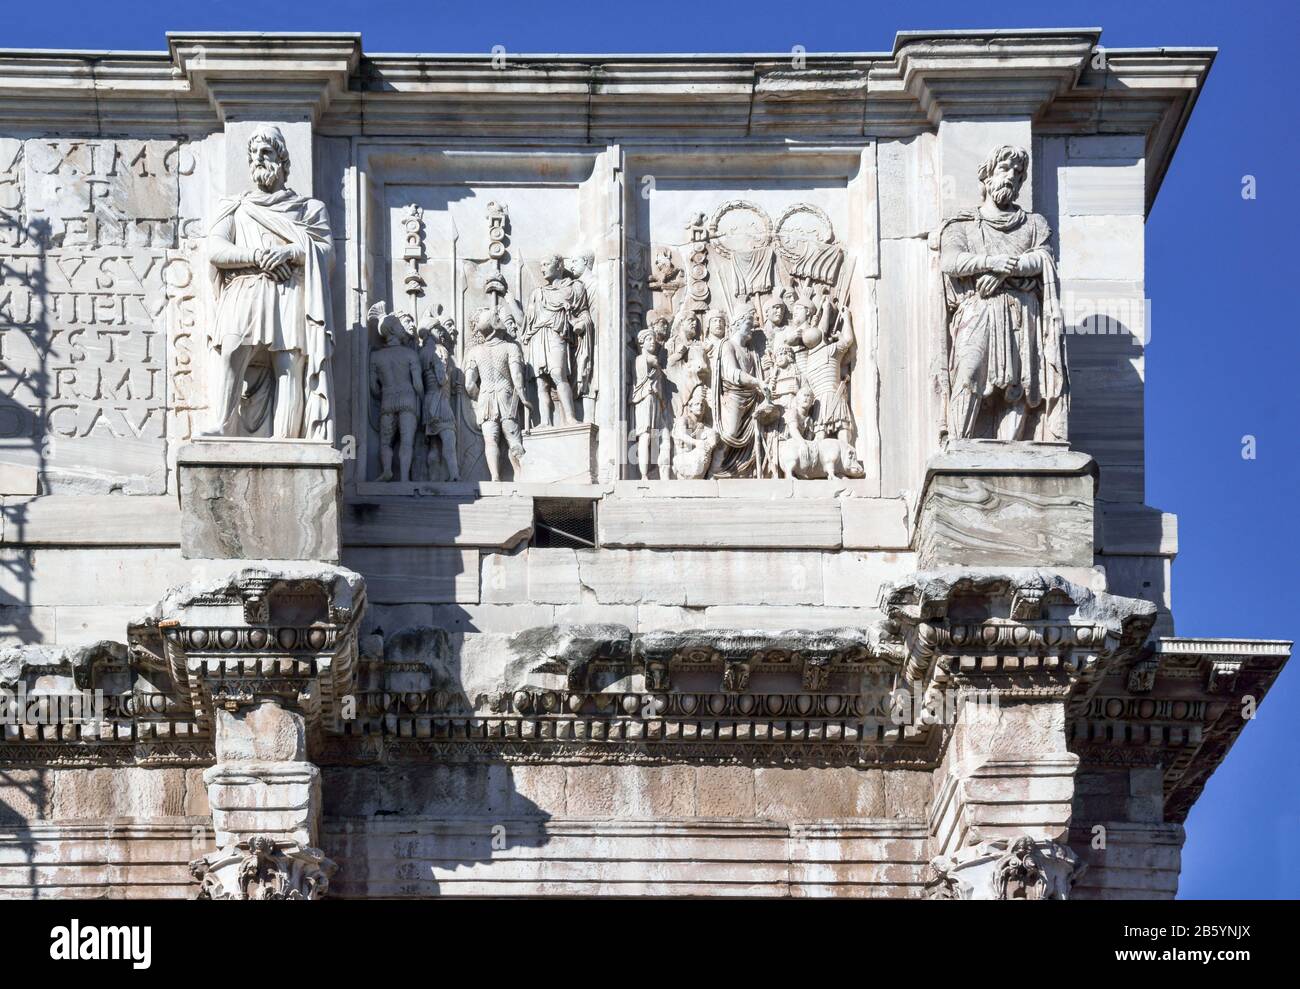 Italia.Roma.l'Arco di Costantino dal 312 al 315 d.C. un tributo al primo Imperatore Cristiano.in restauro nel 2013. Foto Stock